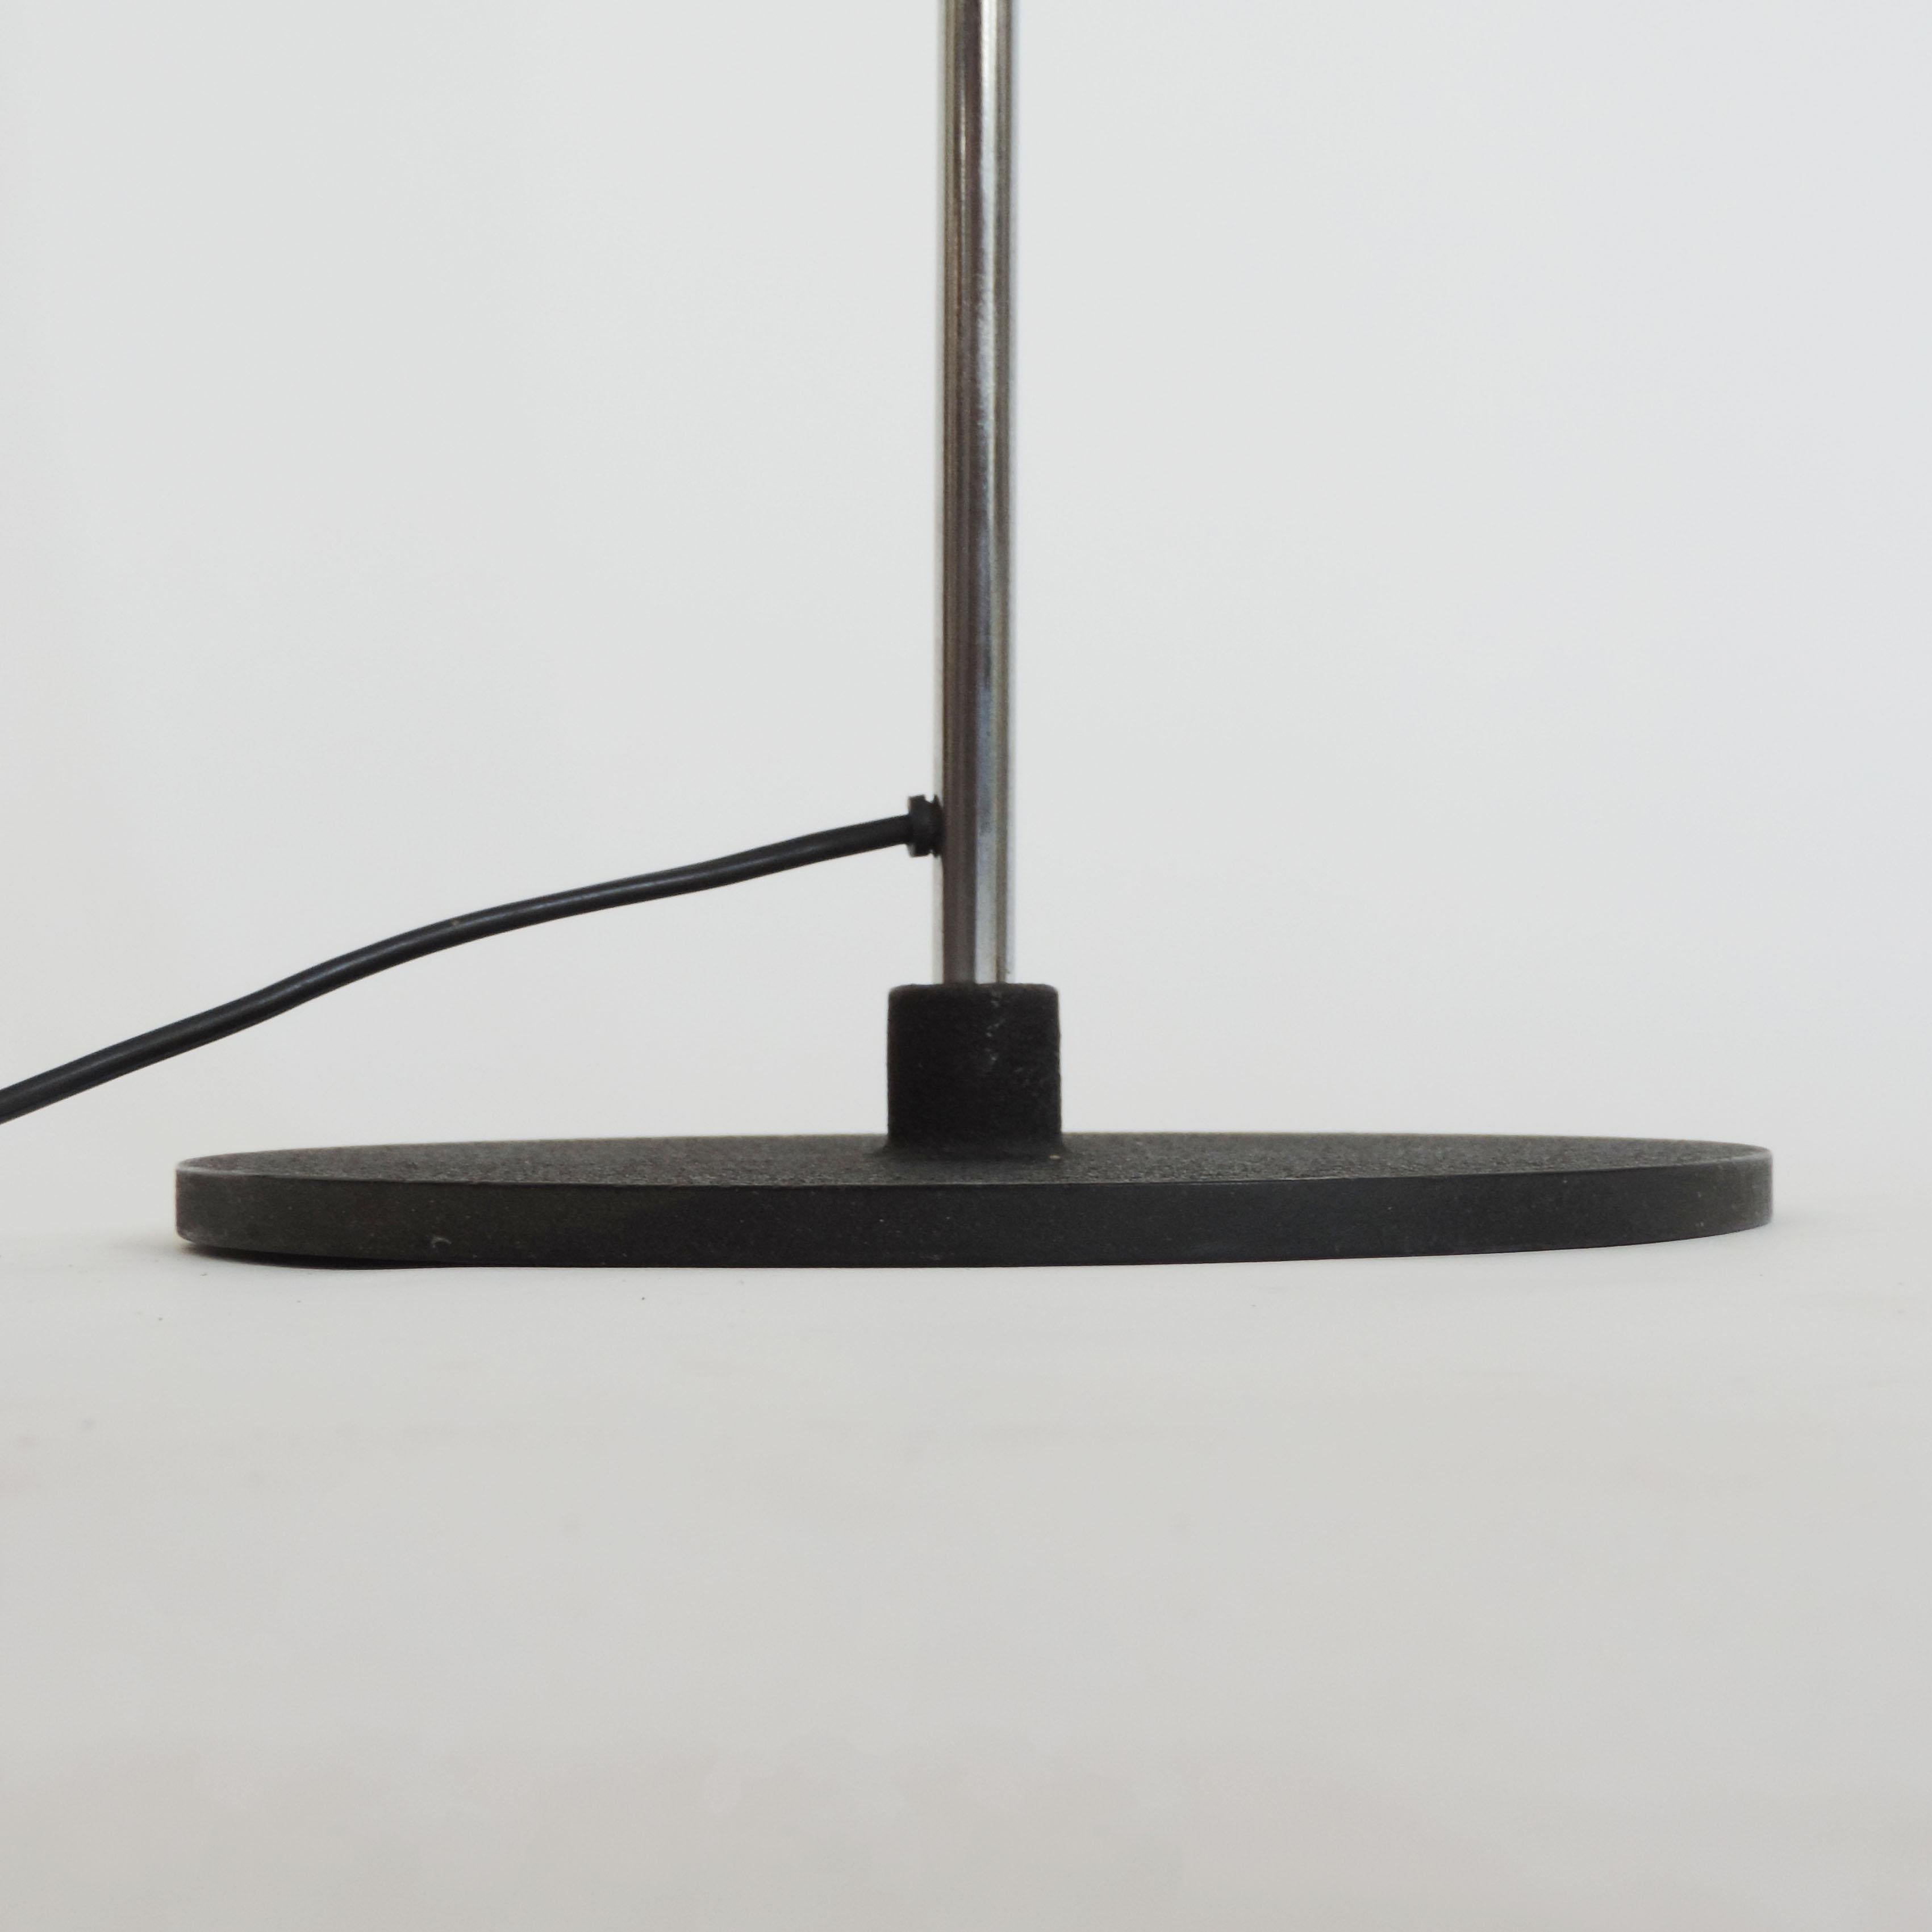 Italian Gino Sarfatti Mod. 1083 Floor Lamp for Arteluce, Italy 1962